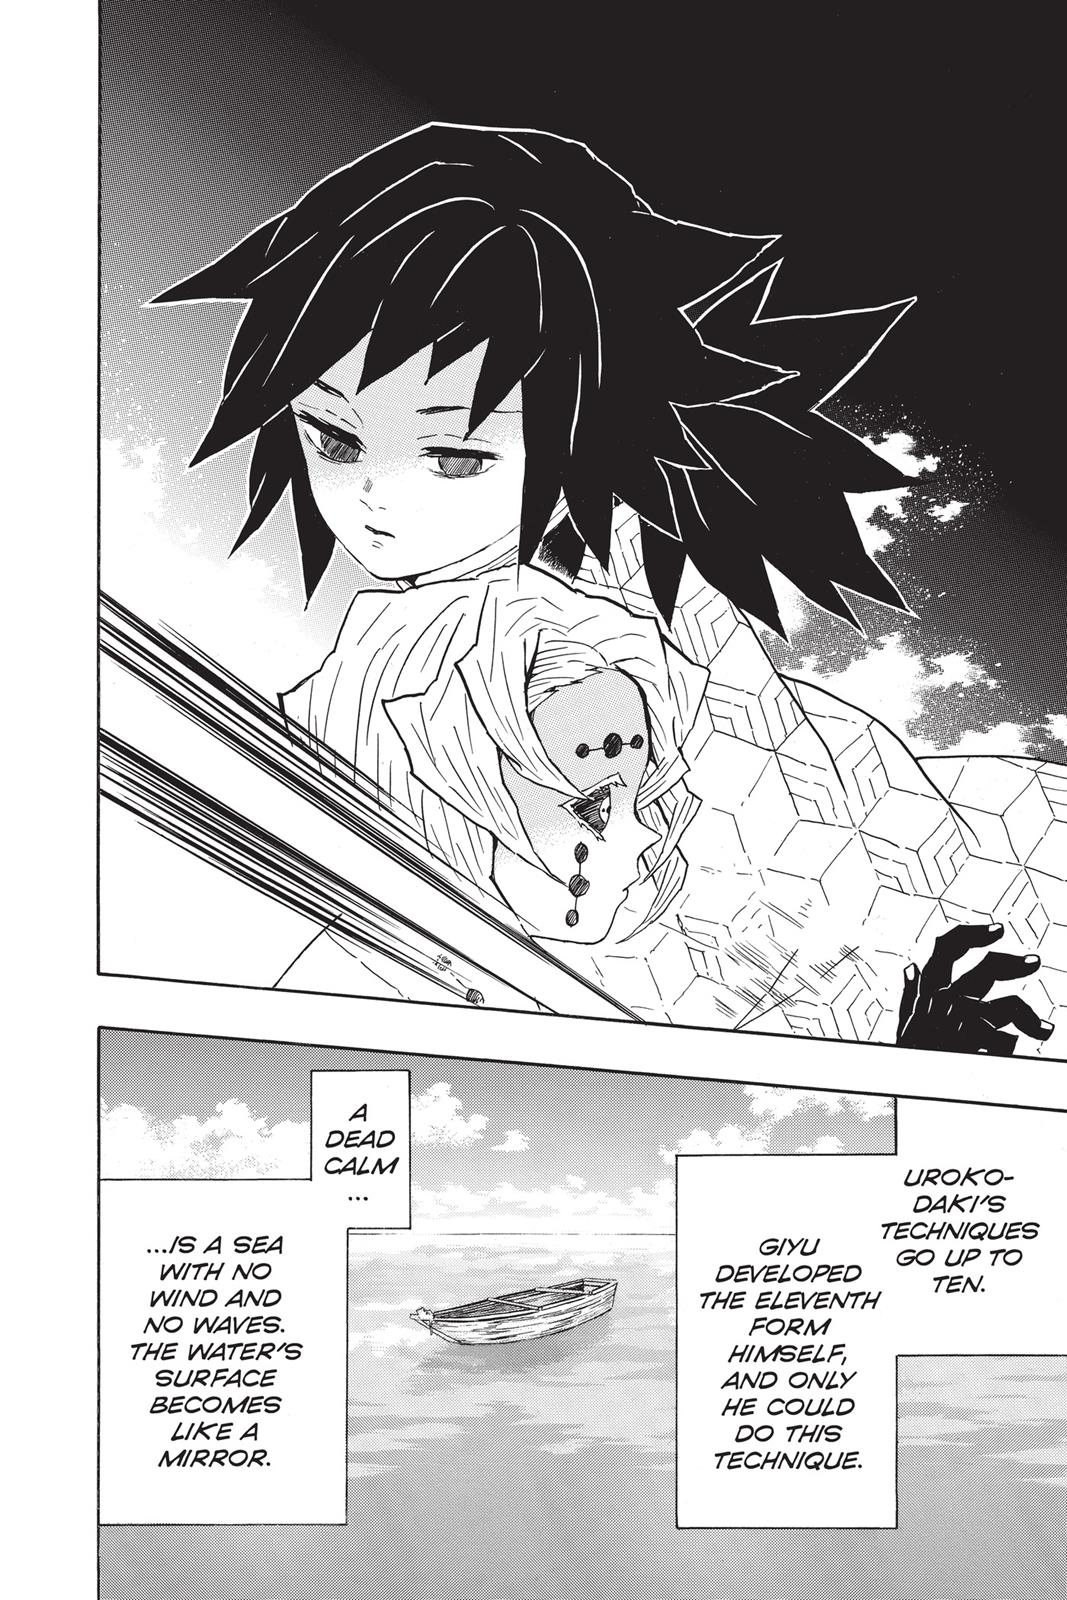 Demon Slayer Manga Manga Chapter - 42 - image 15